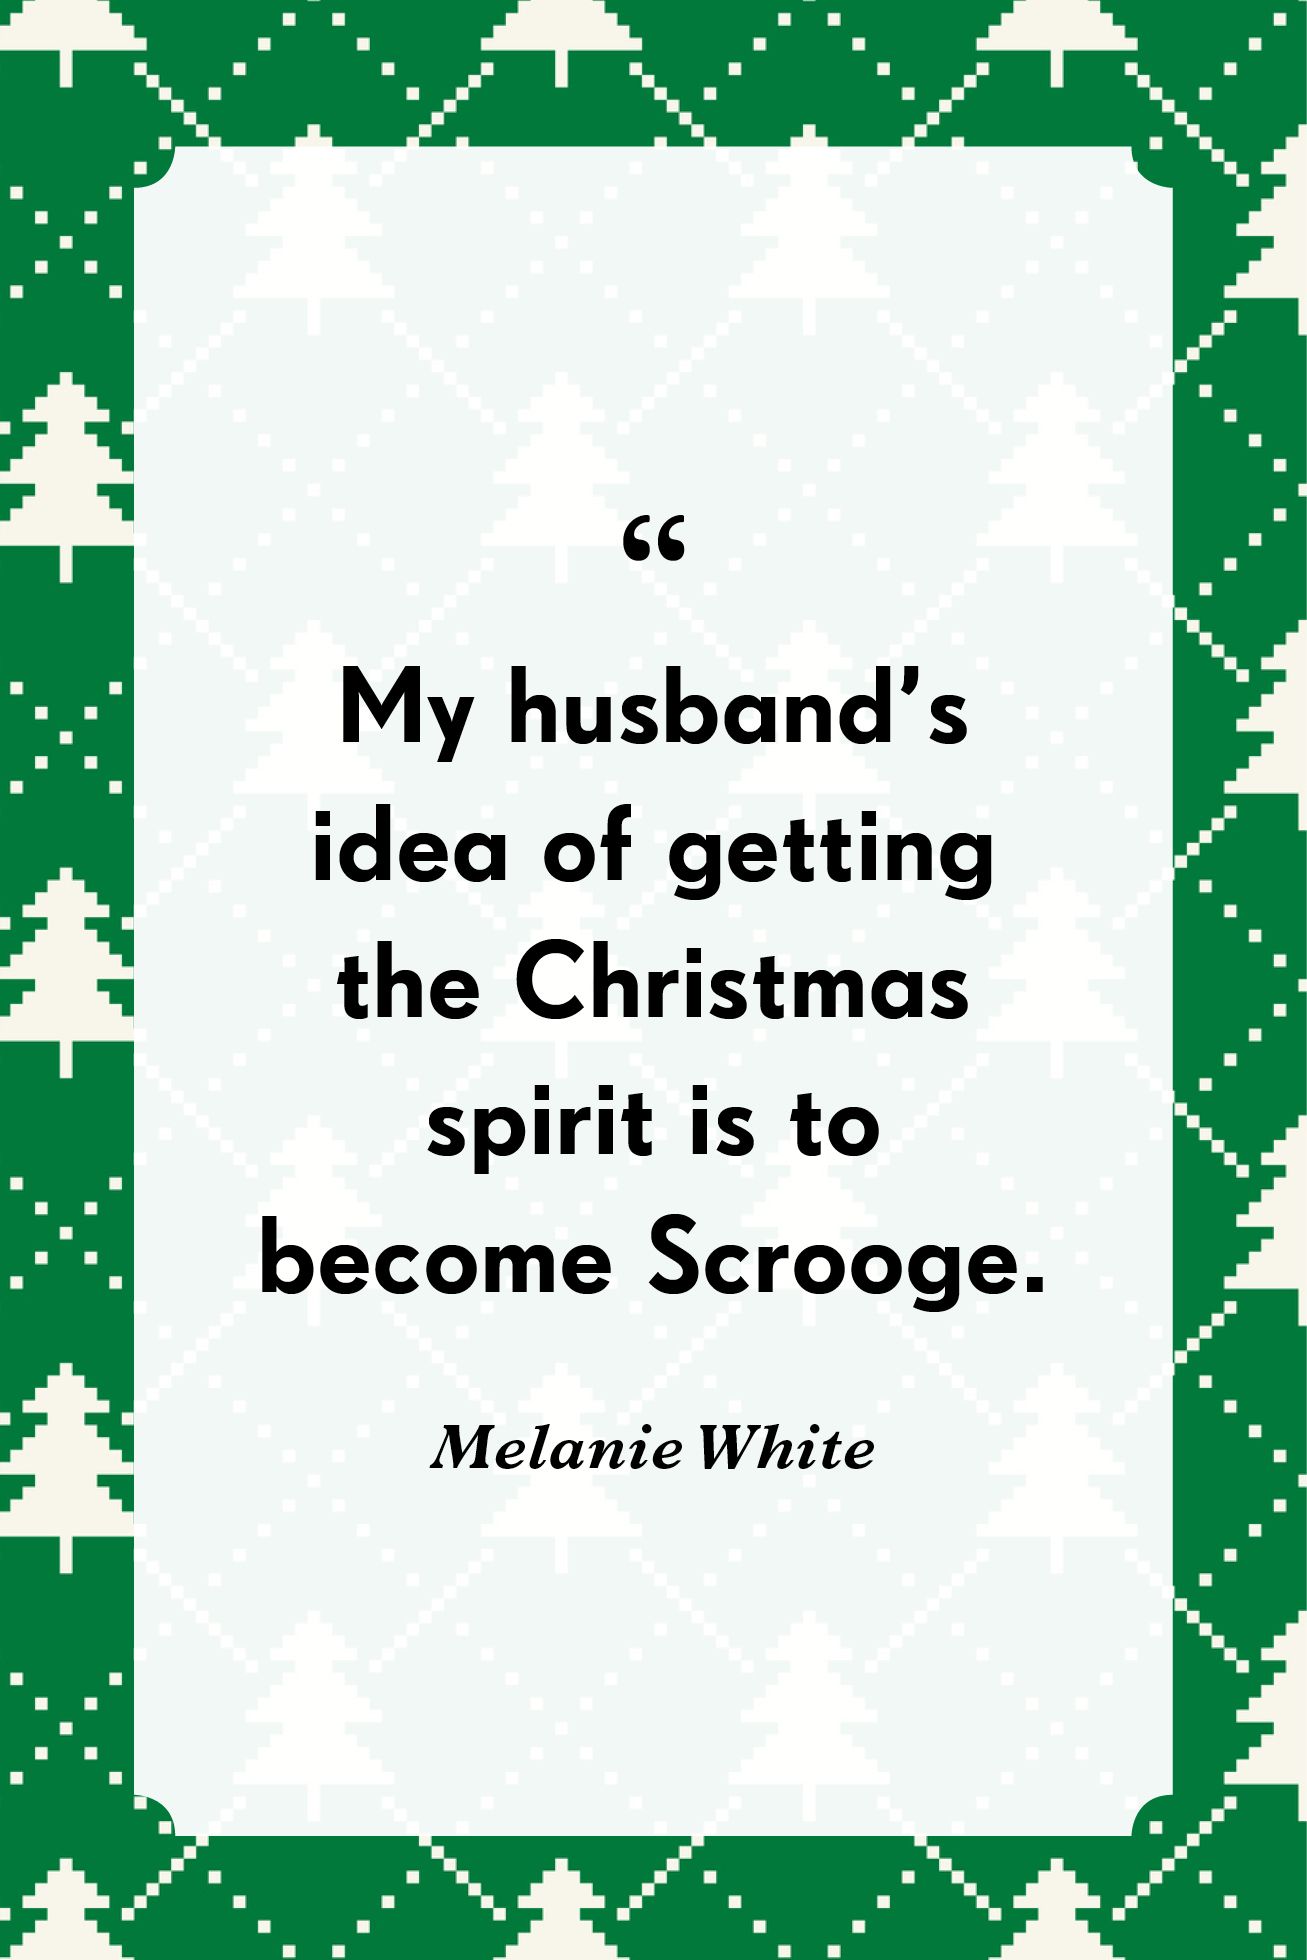 27 Funny Christmas Quotes - Funny Christmas Sayings for Gift Tags